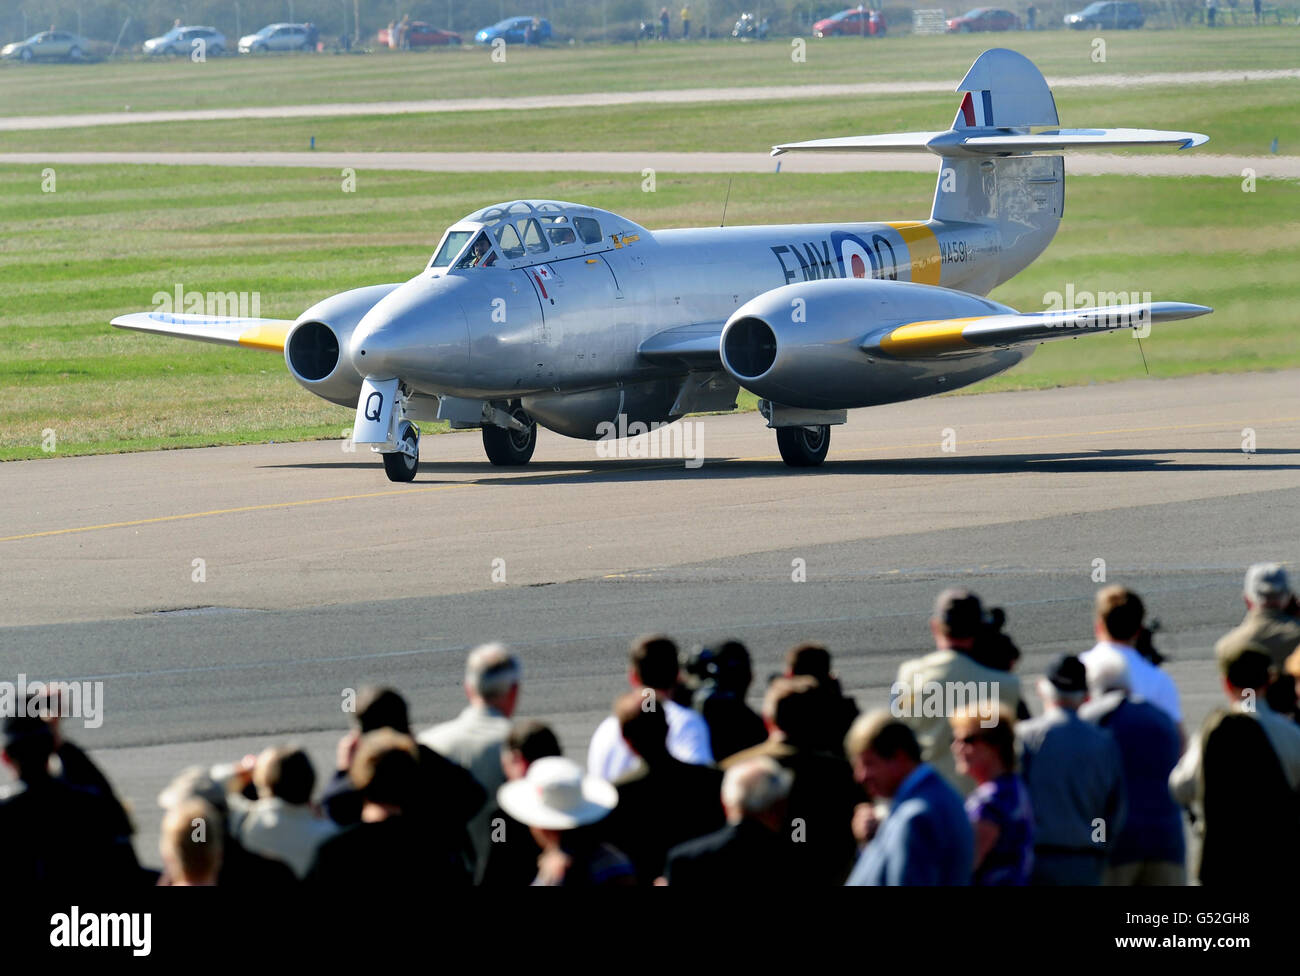 Gloster Meteor T7 des Classic Aircraft Trust ist bereit für den Start am Flughafen Coventry. Die Meteor ist Großbritanniens ältestes flugfähiges Düsenflugzeug, das 1949 gebaut wurde, und das einzige fliegende Meteor in Großbritannien. Stockfoto